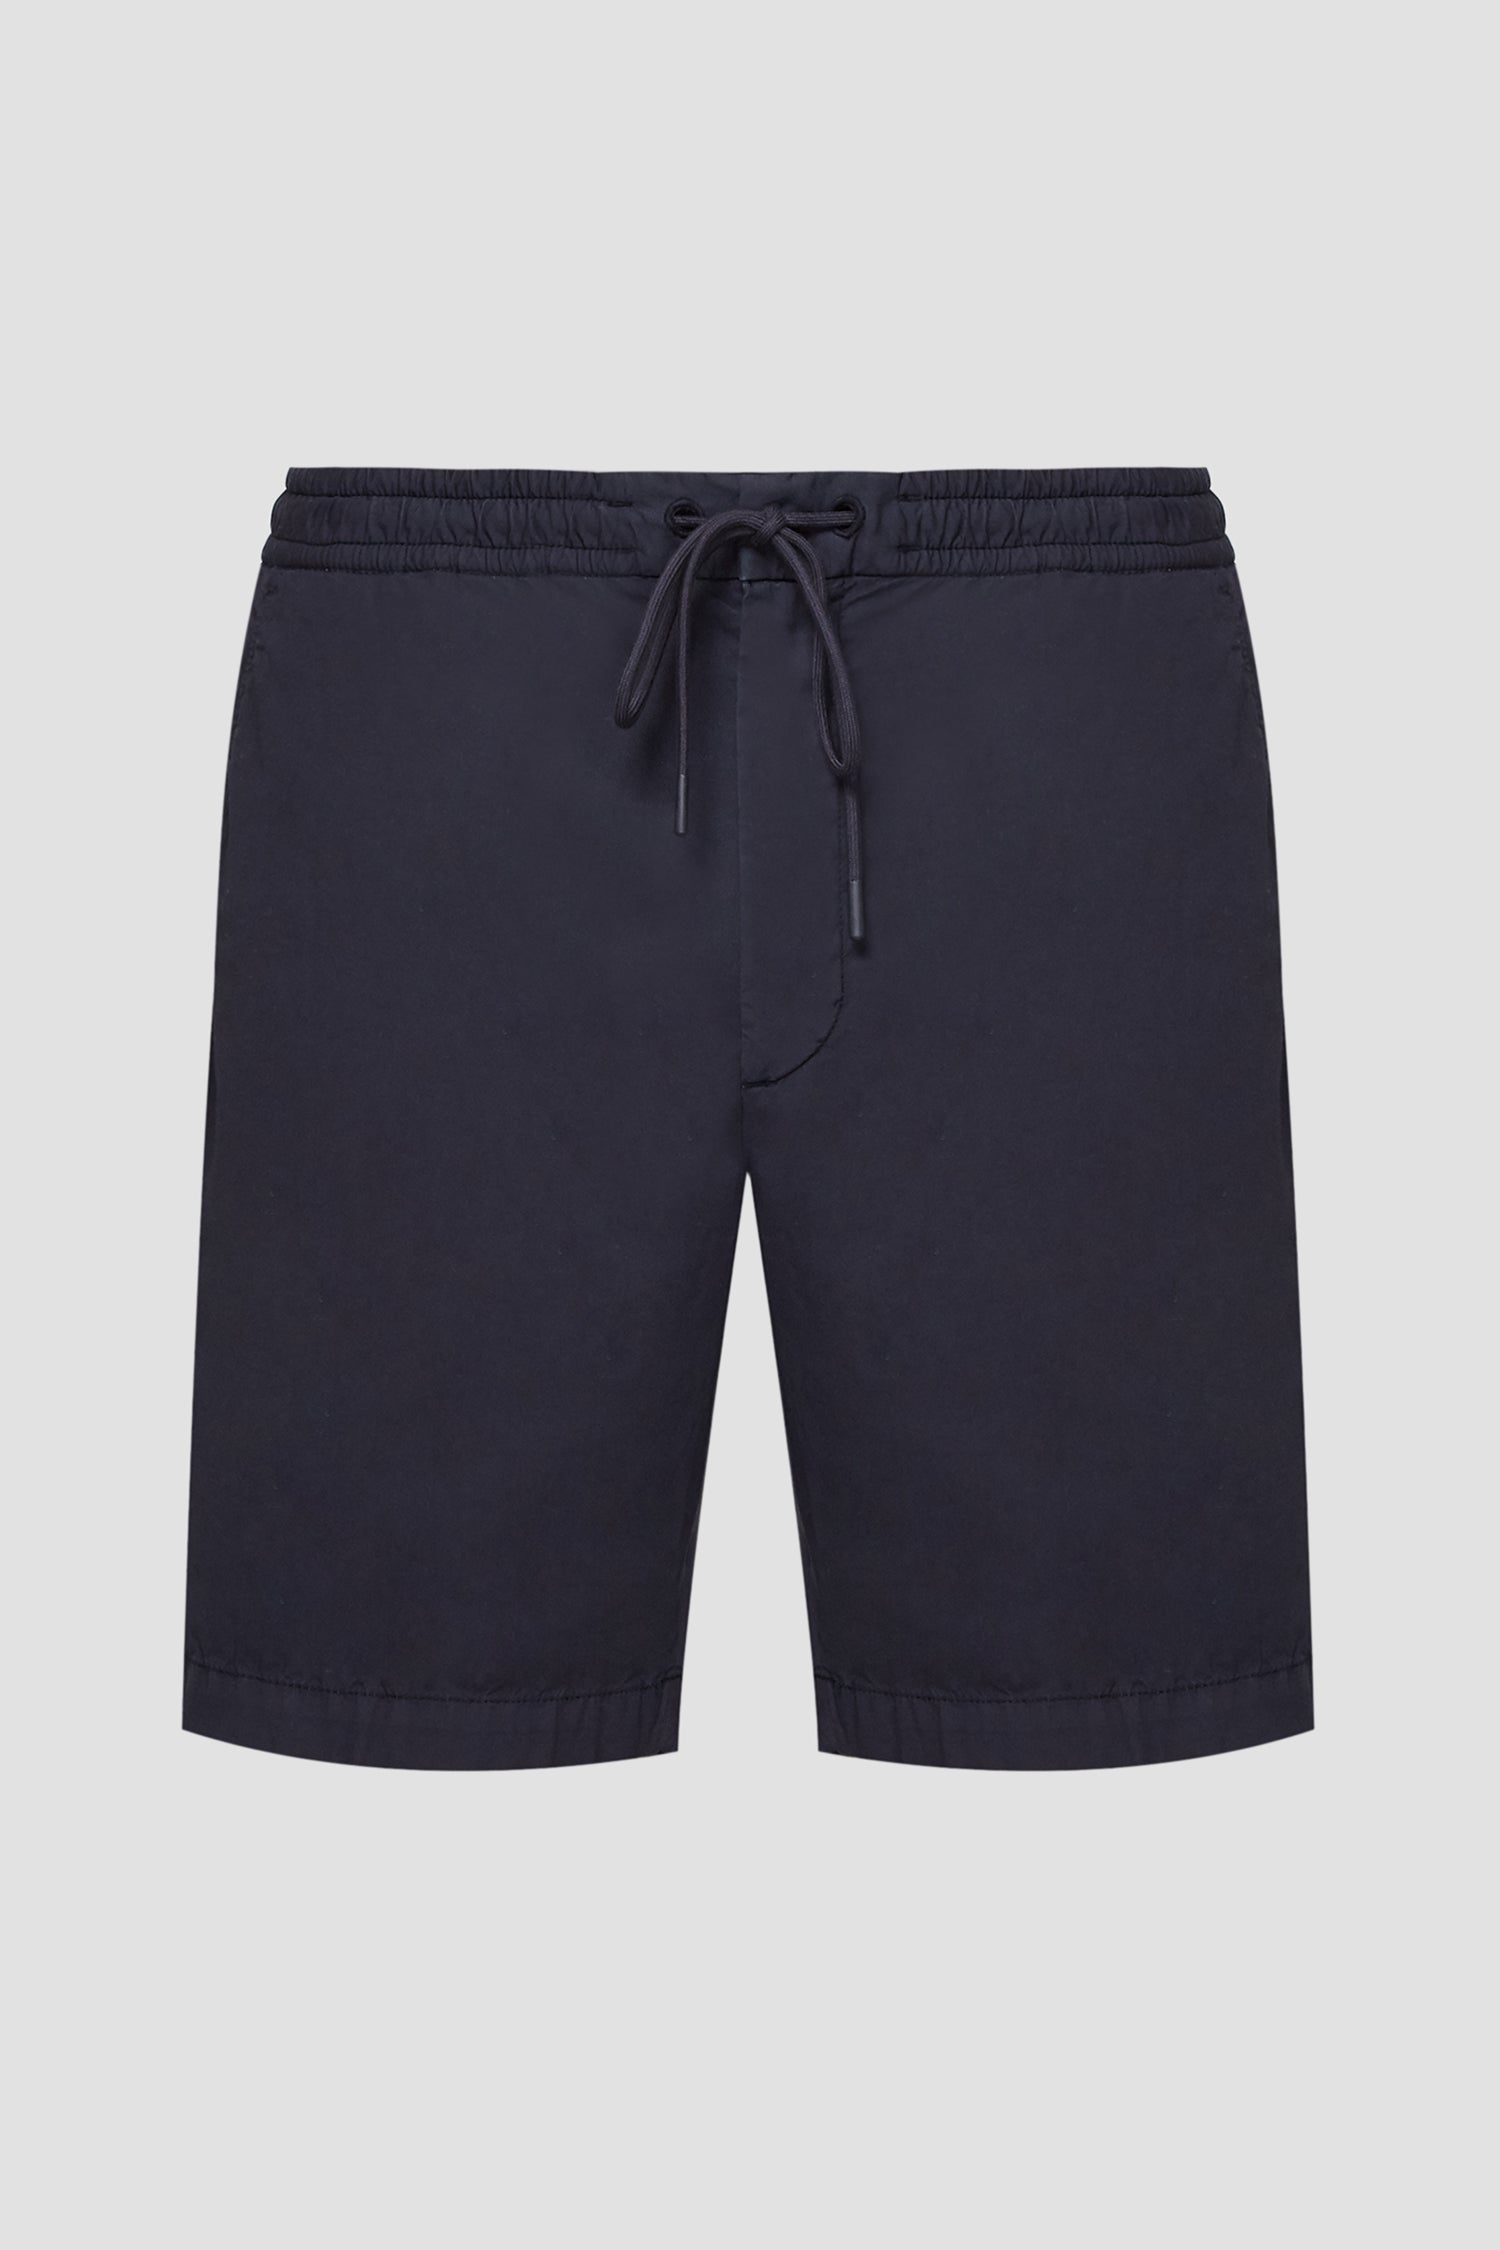 Shorts relaxed fit en popelín de algodón elástico - Marino -